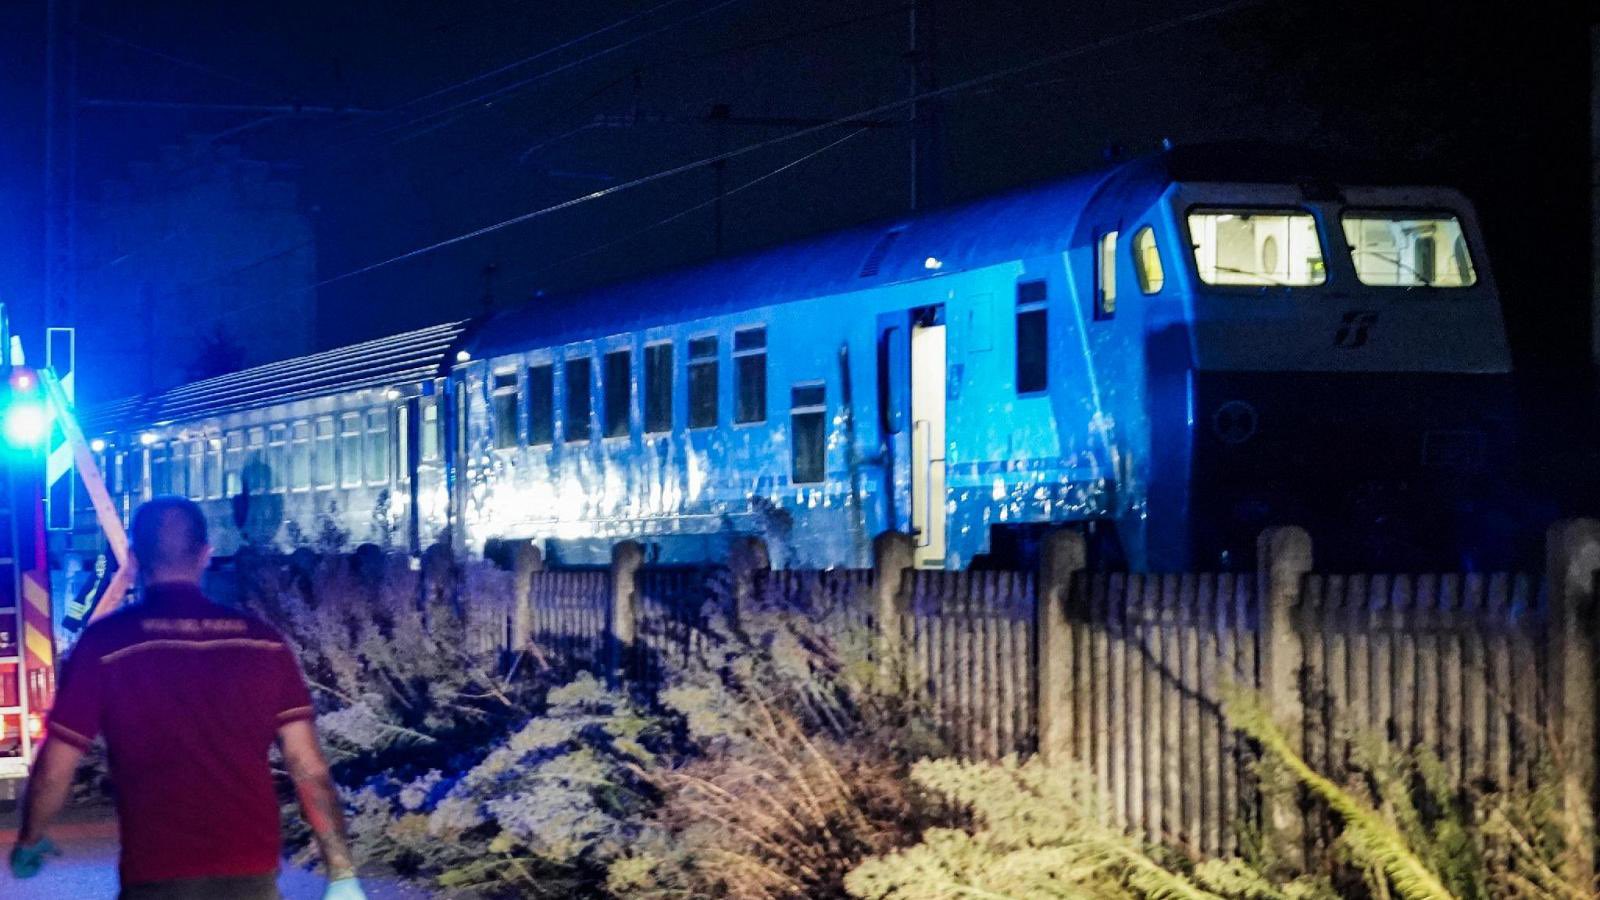 Εργατικό δυστύχημα στην Ιταλία: 5 εργαζόμενοι των σιδηροδρόμων σκοτώθηκαν όταν χτυπήθηκαν από τρένο